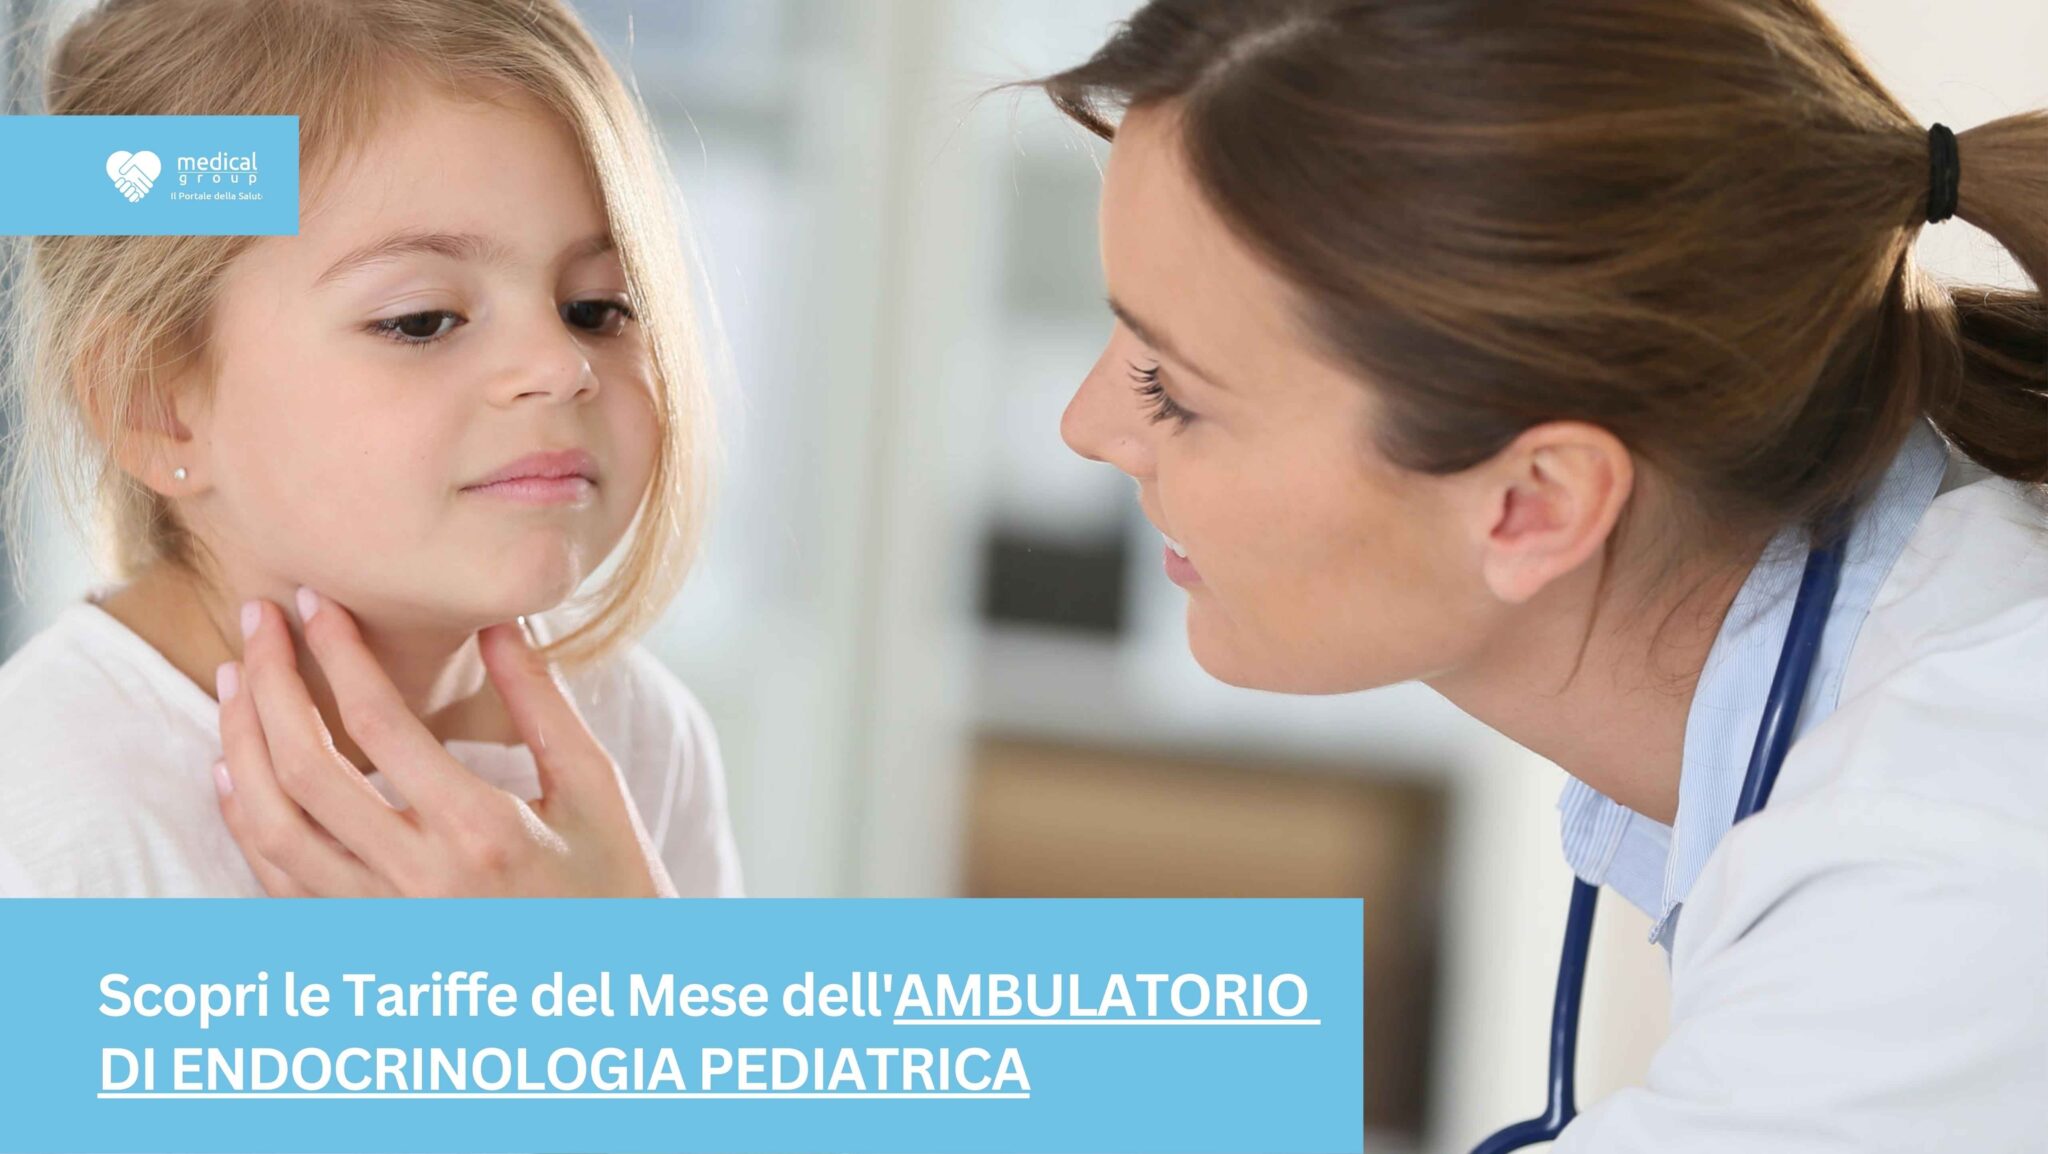 Tariffe del Mese Poliambulatorio Endocrinologia Pediatrica F-Medical Frosinone_12_11zon